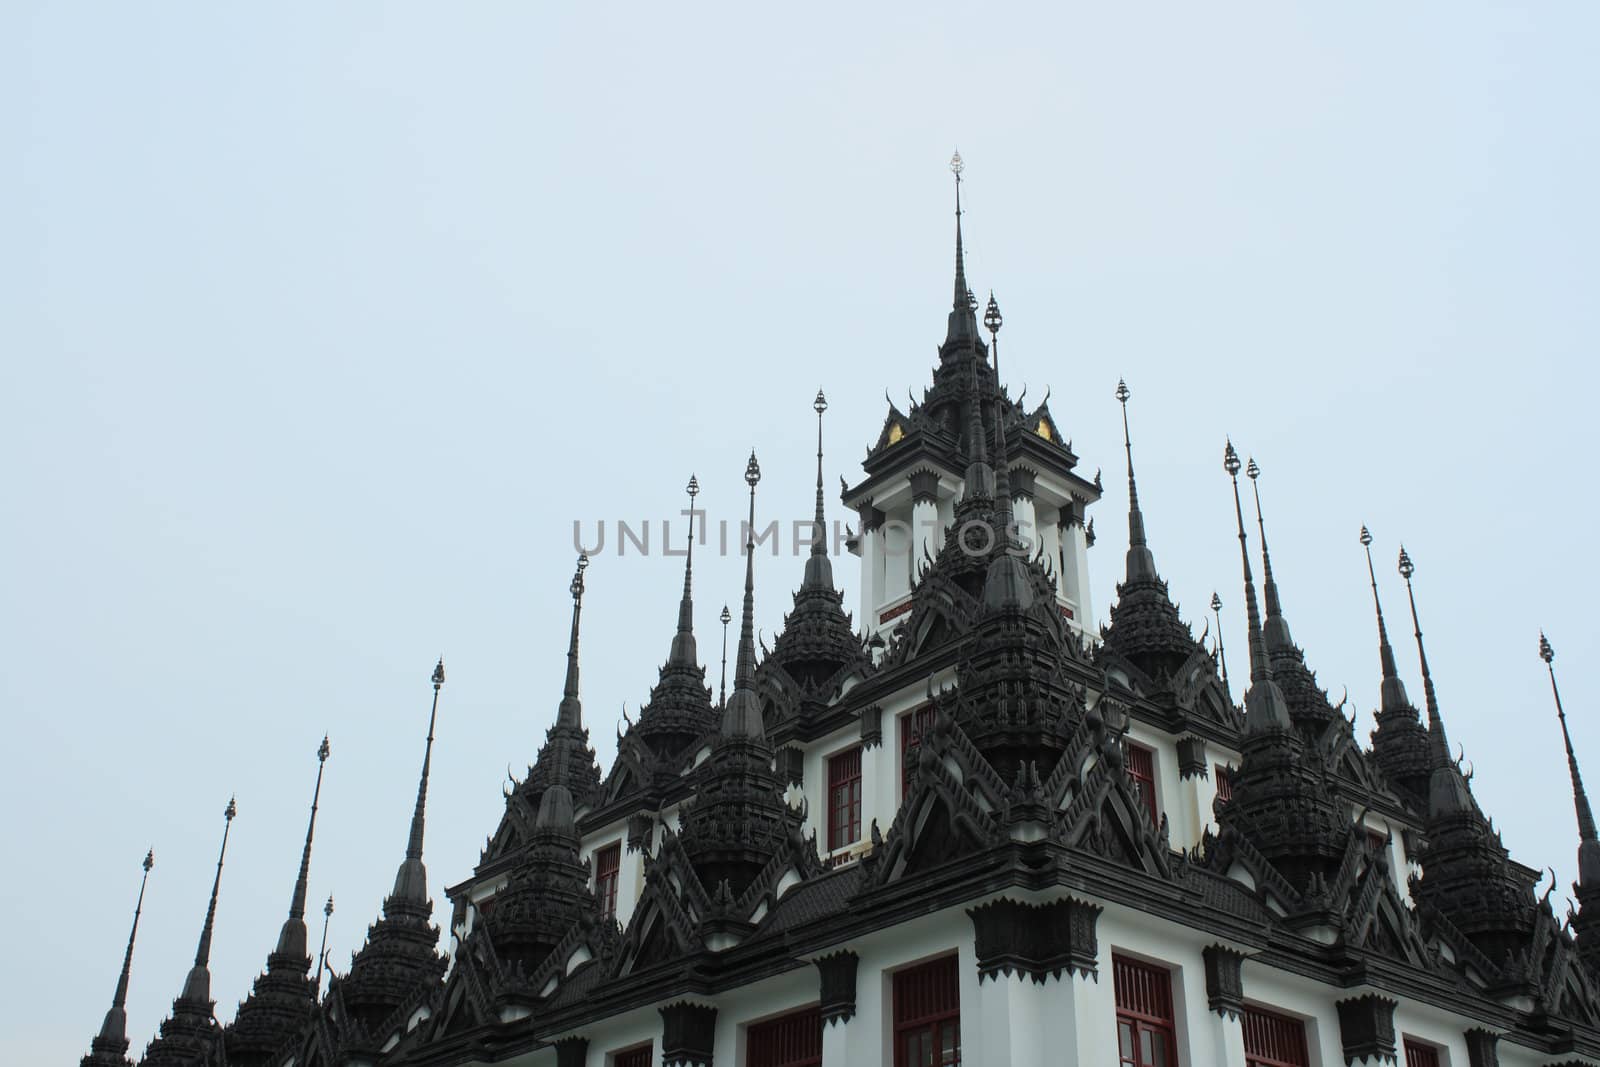 Pagoda in Wat Ratchanadda in Bangkok, Thailand